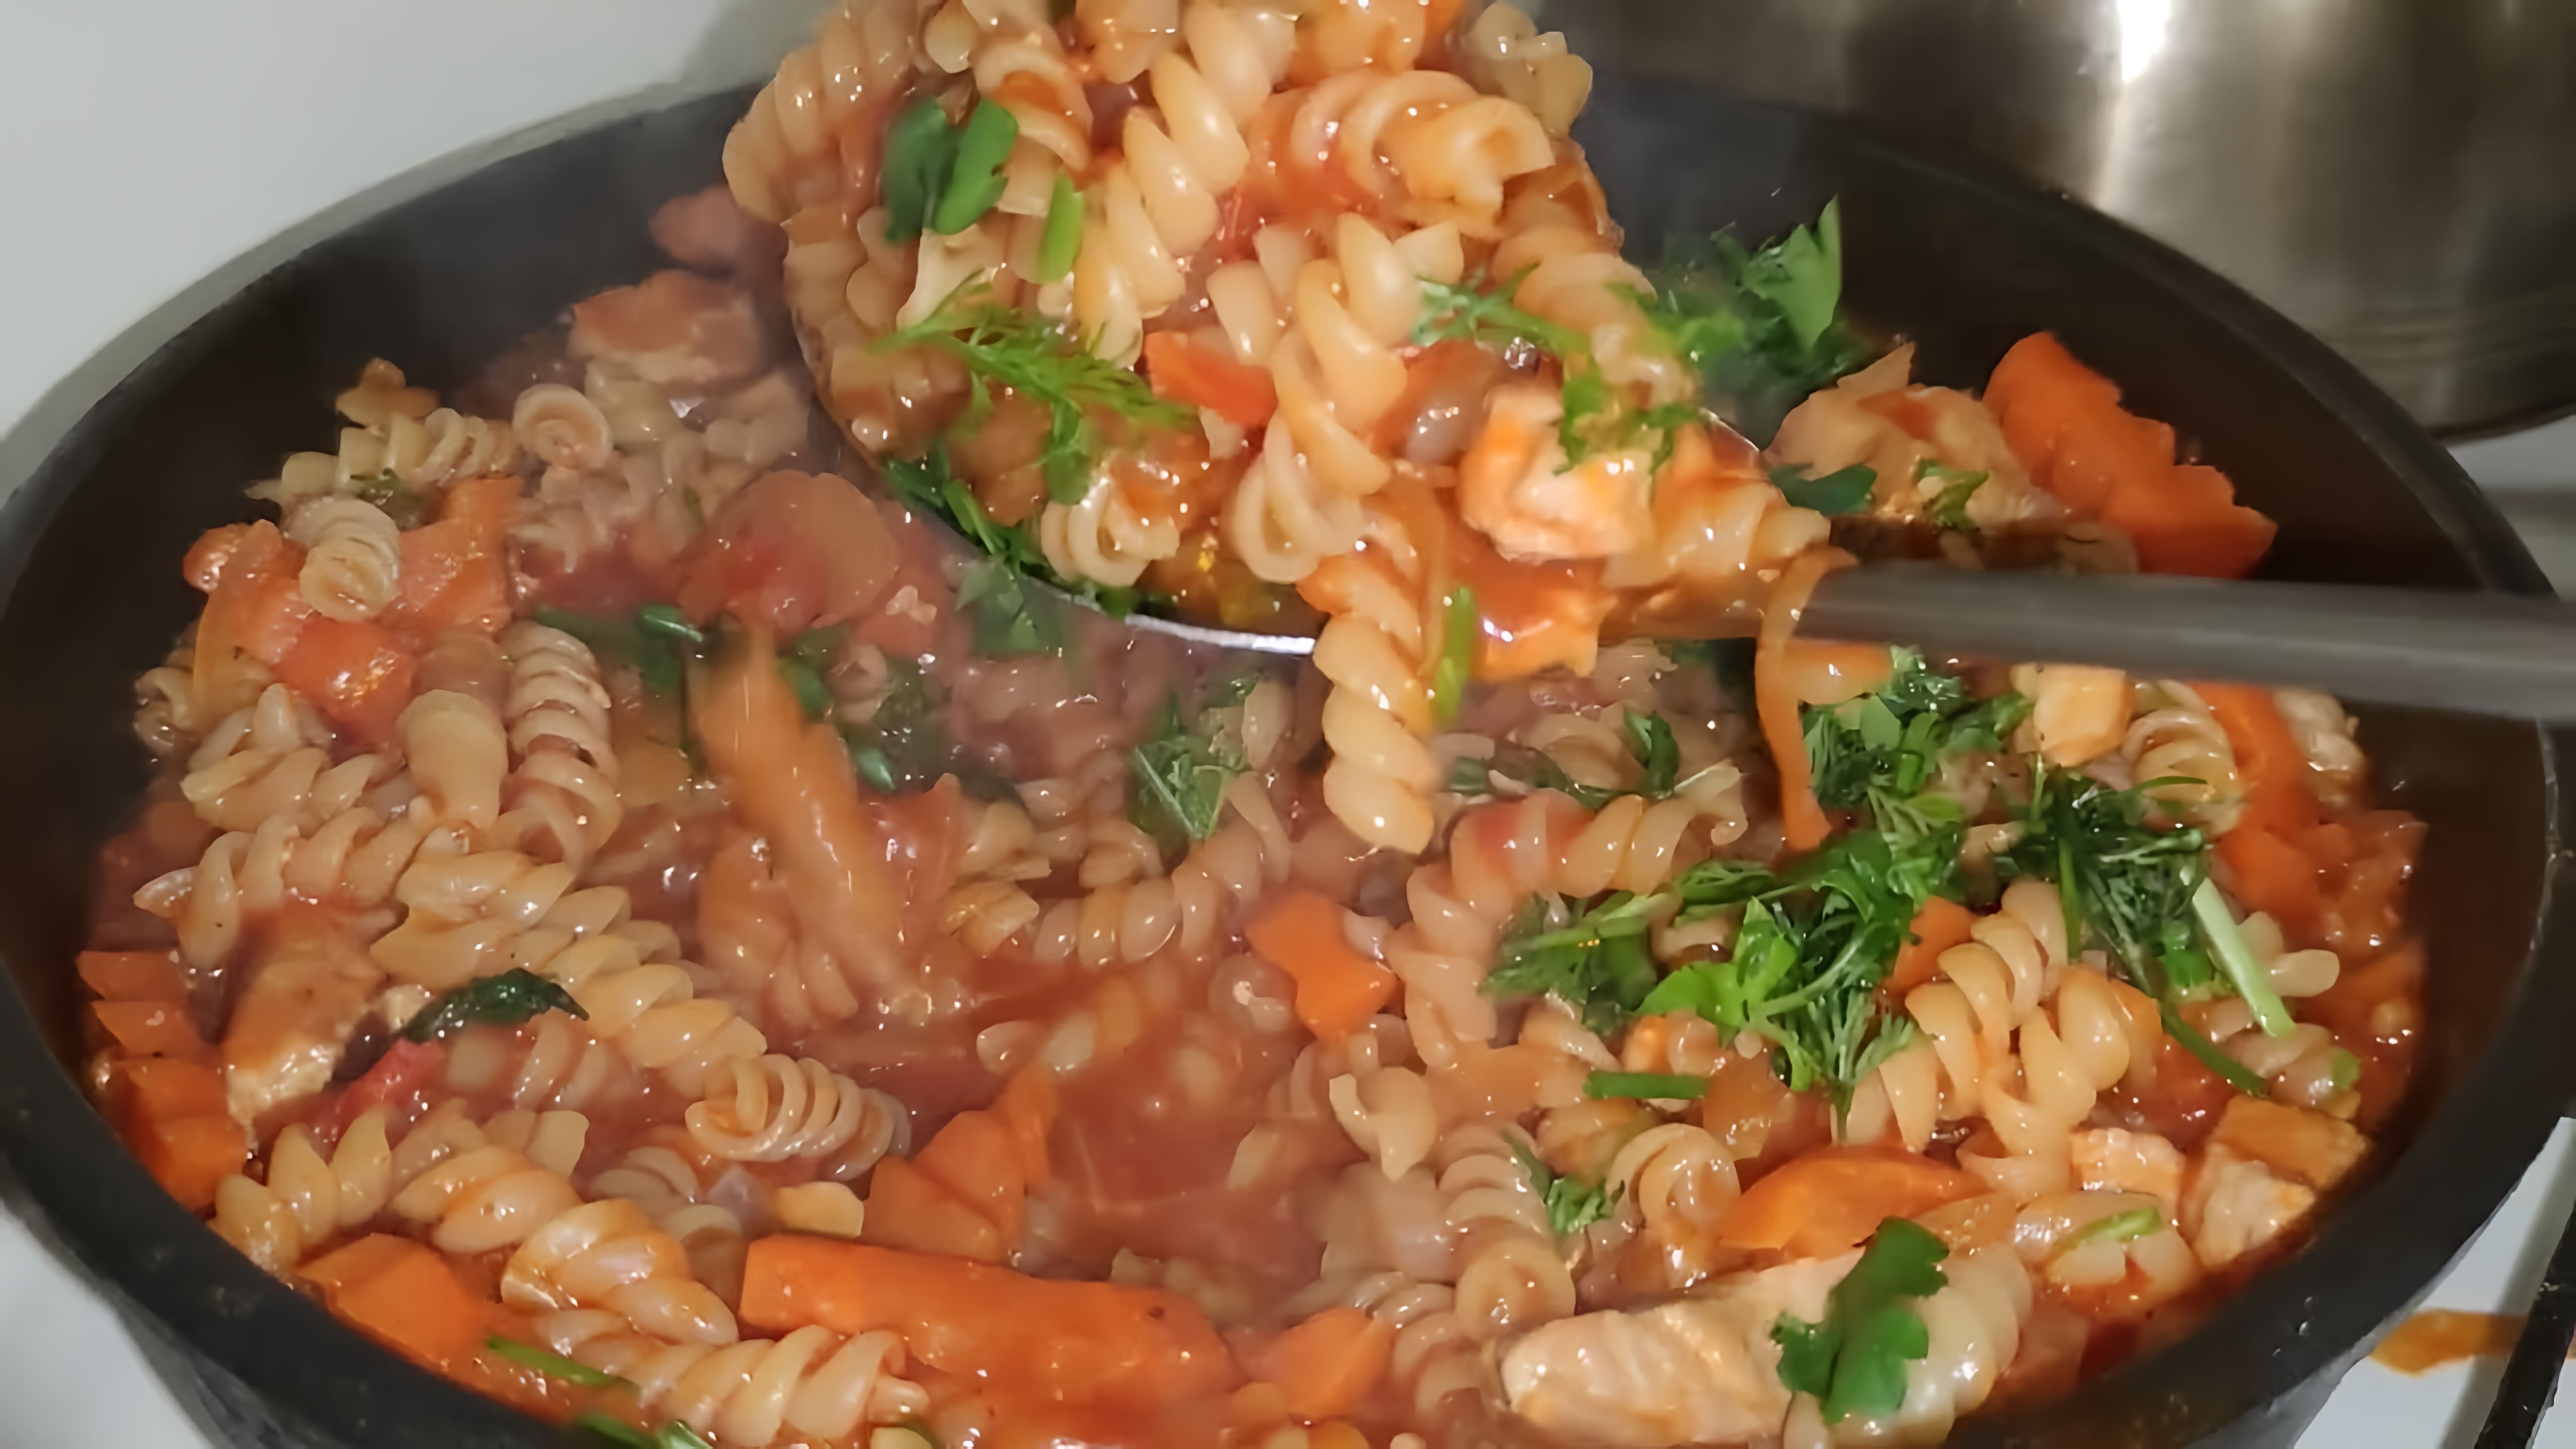 В этом видео демонстрируется простой и быстрый рецепт приготовления макарон с мясом и овощами в томатном соусе